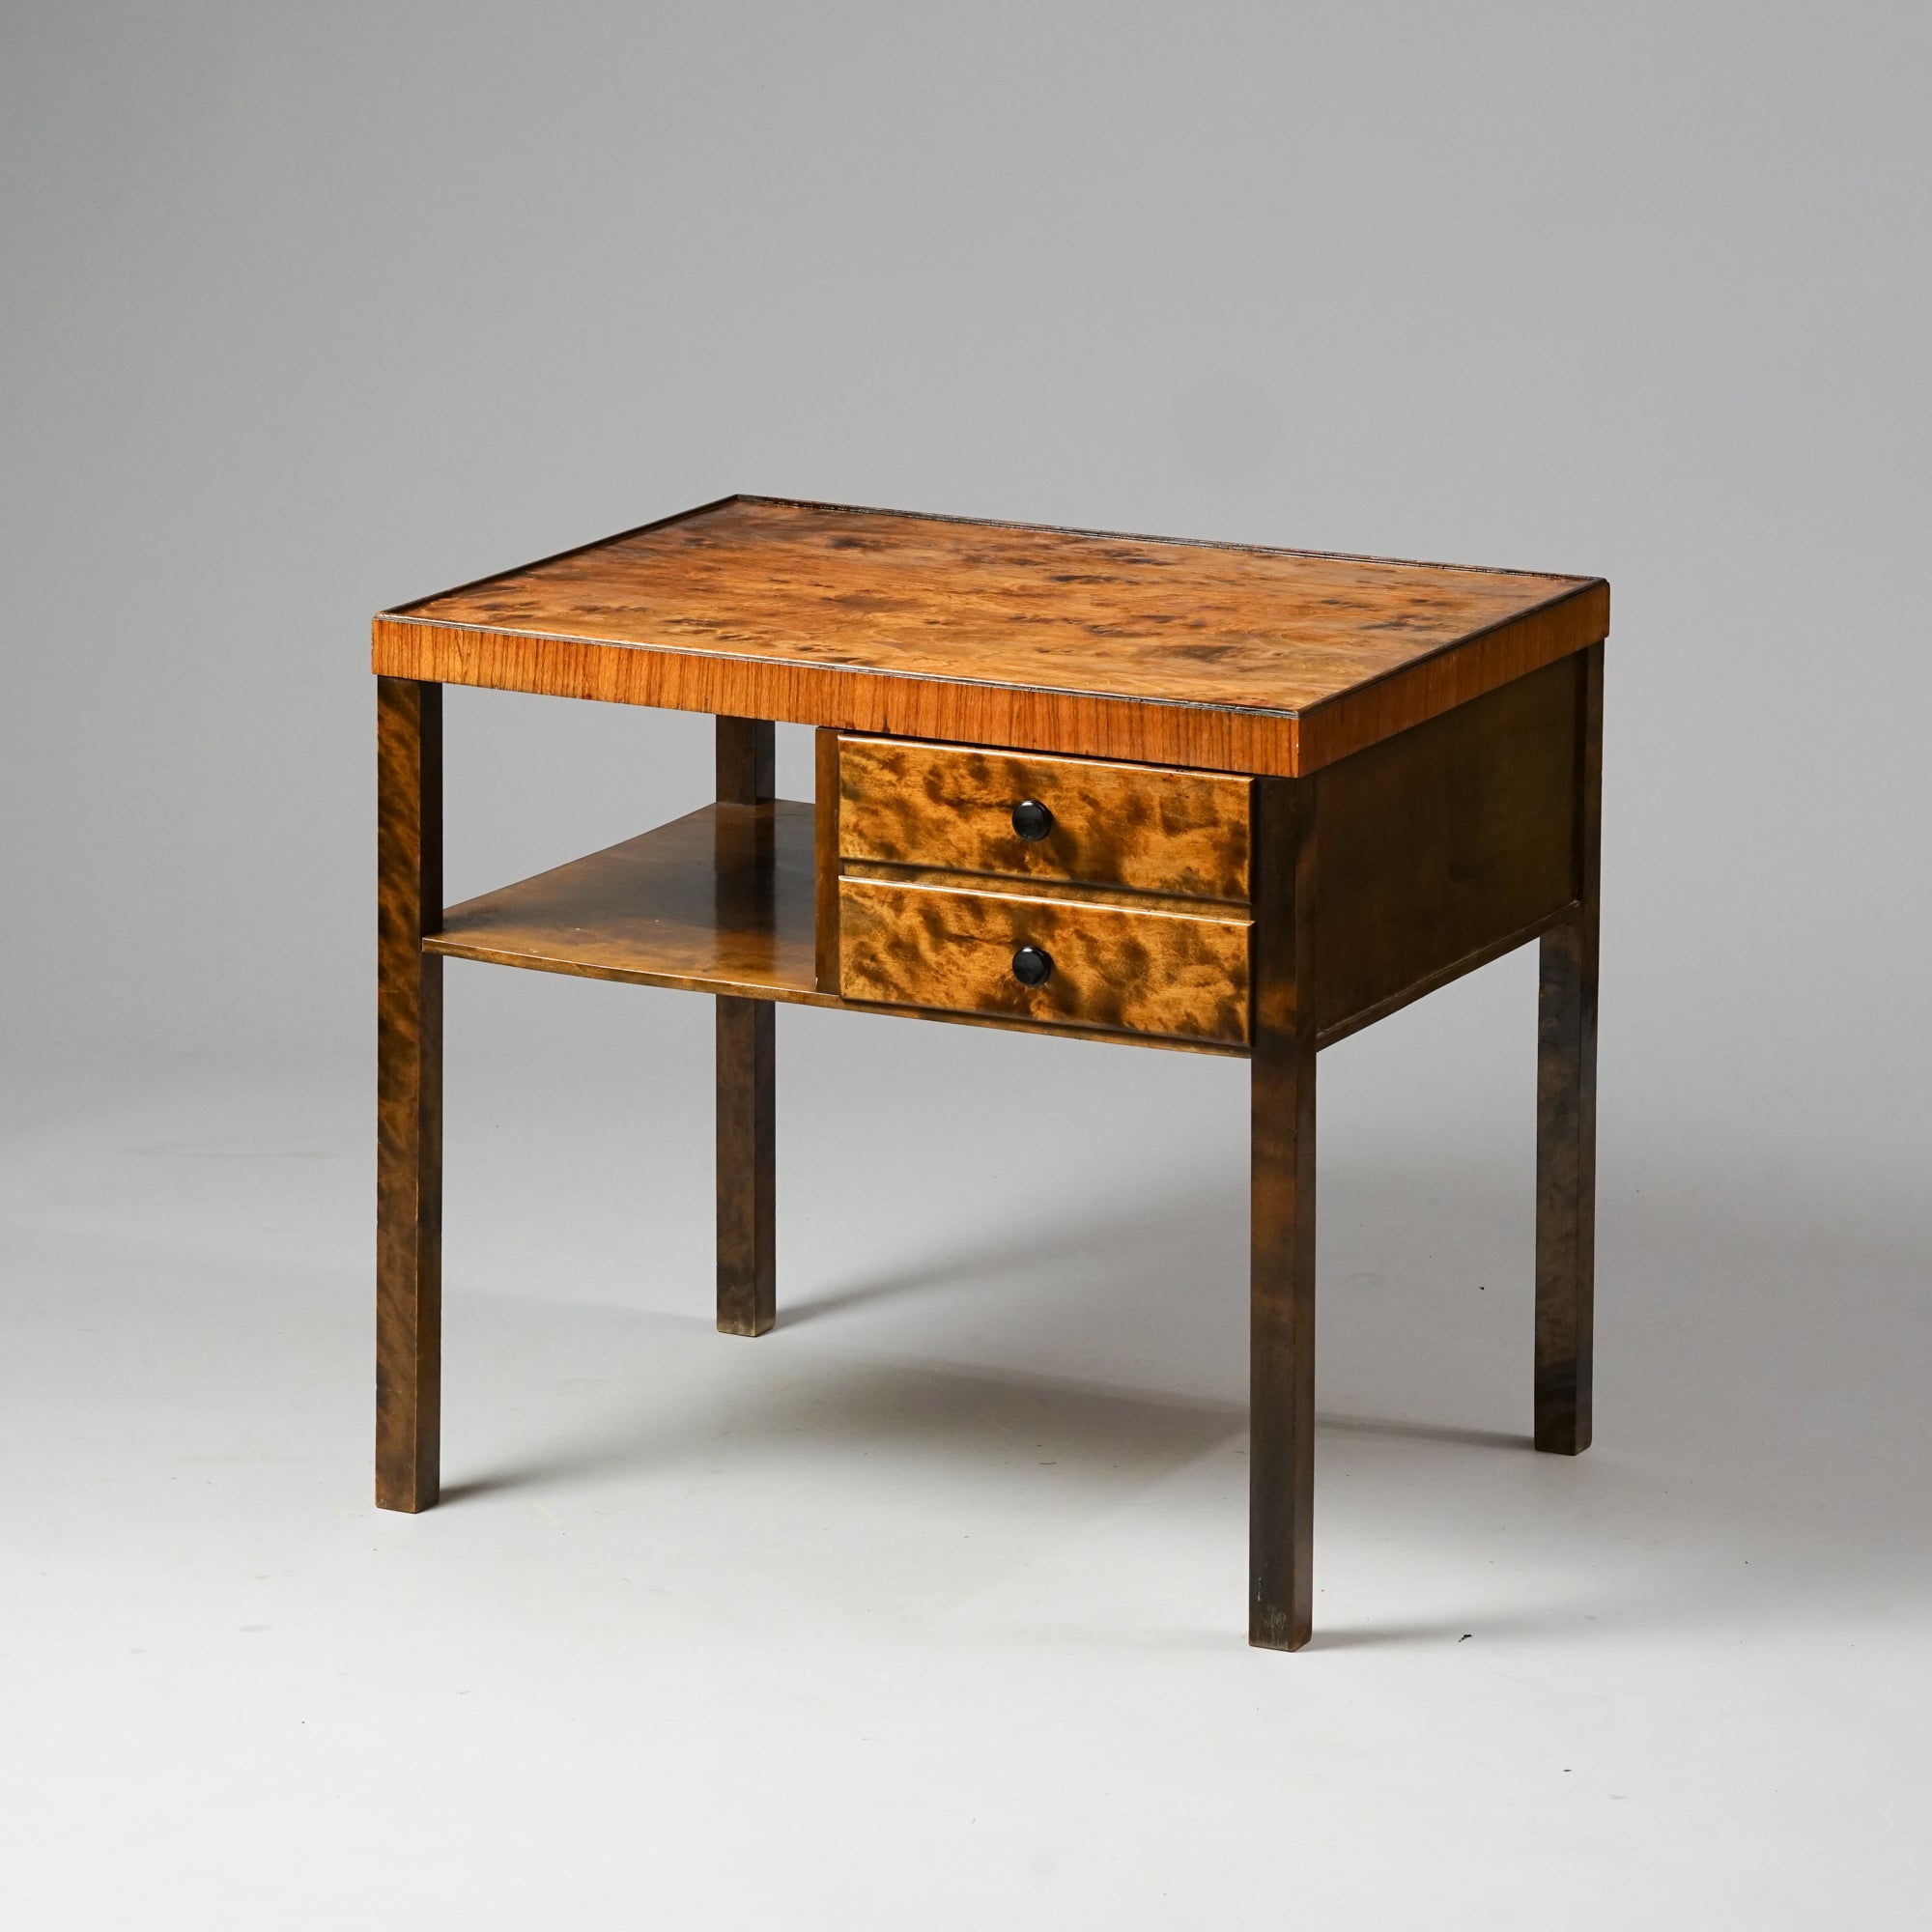 Koivusta ja loimukoivusta tehty pöytä, jonka pinnassa on elävä kuviointi. Pöydässä on kaksi vetolaatikkoa ja yksi hylly. 